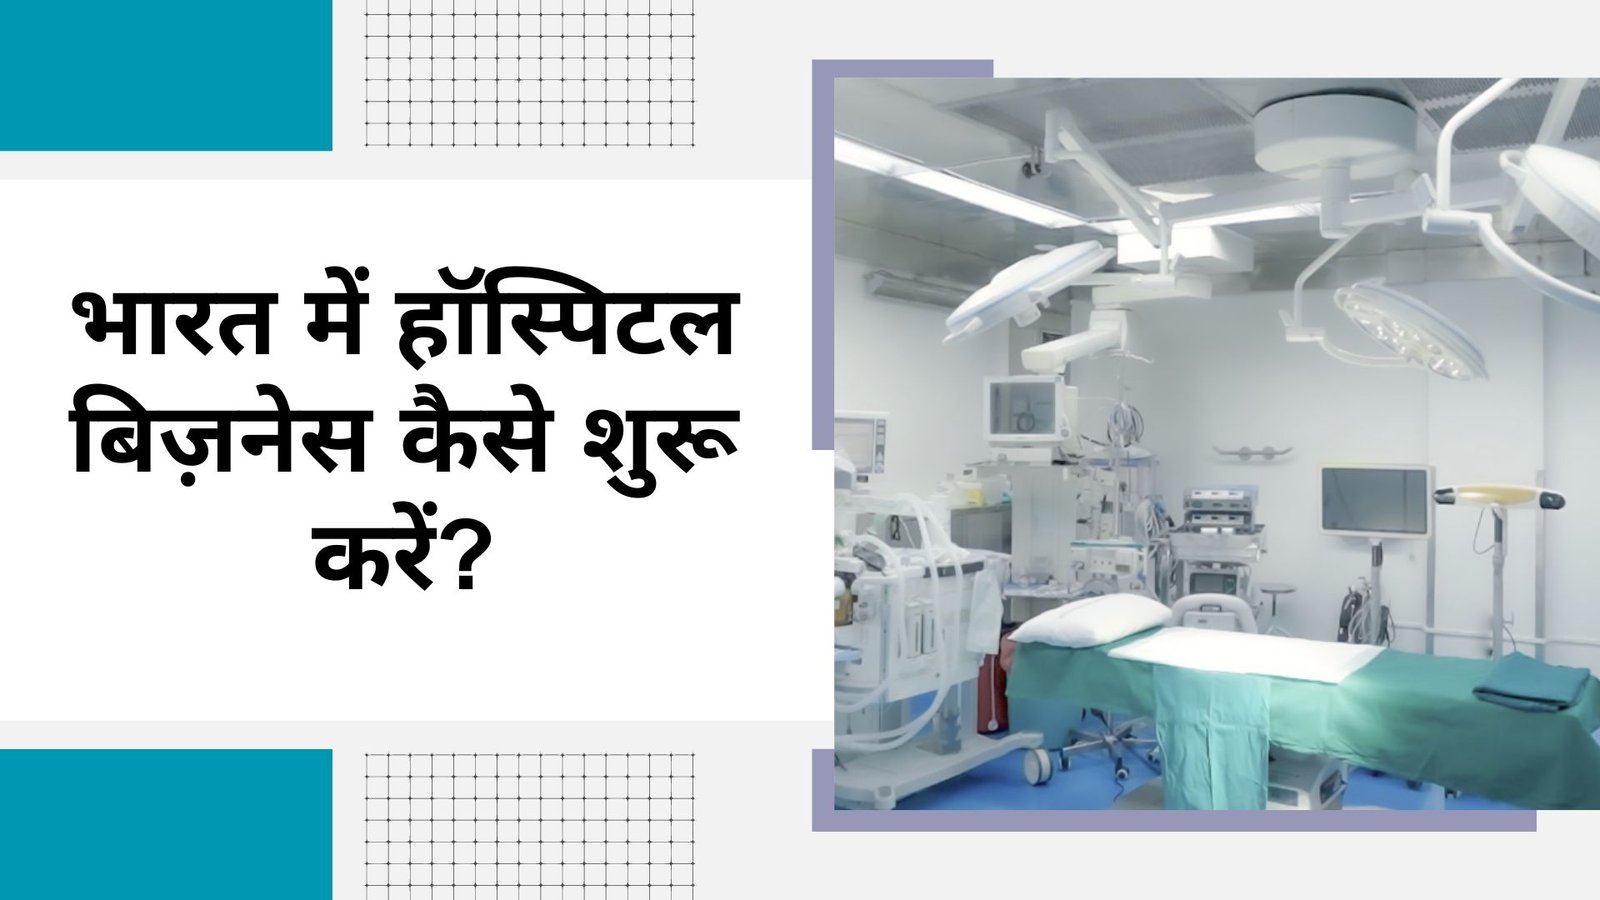 भारत में हॉस्पिटल बिज़नेस कैसे शुरू करें?